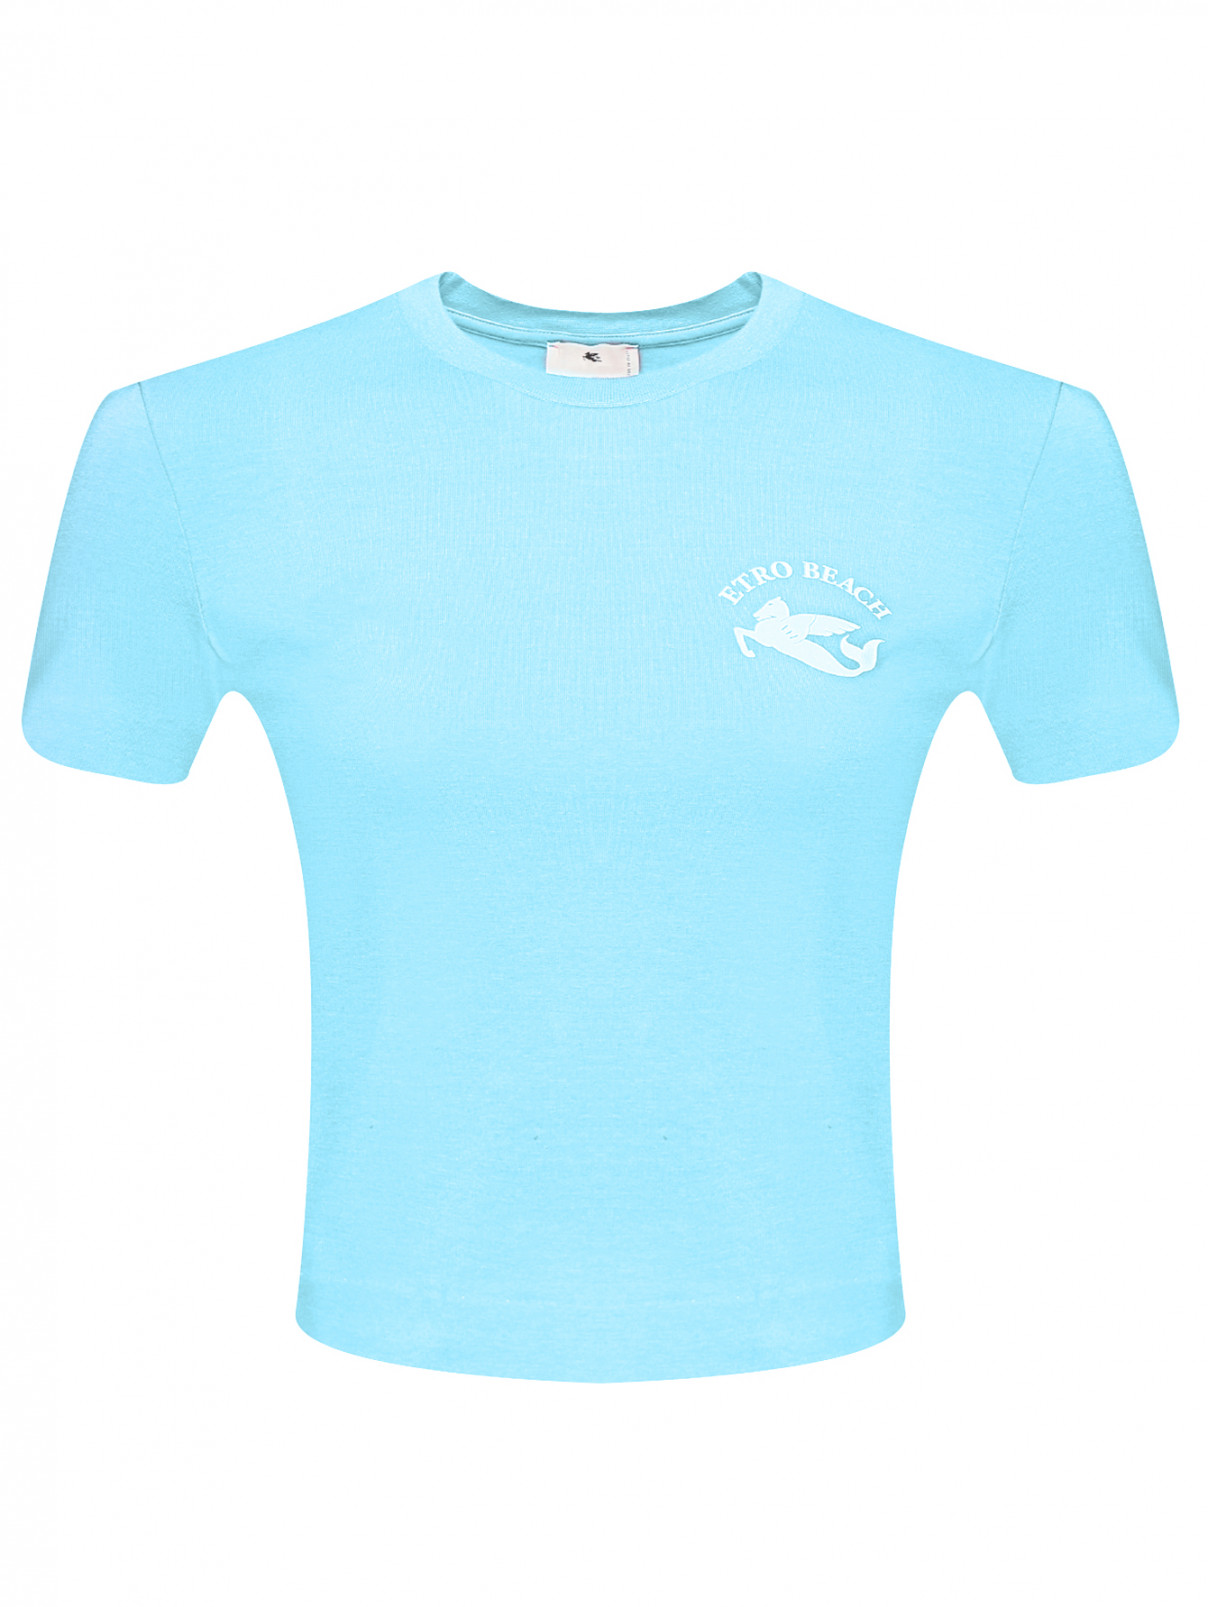 Укороченная футболка из хлопка с принтом Etro  –  Общий вид  – Цвет:  Синий